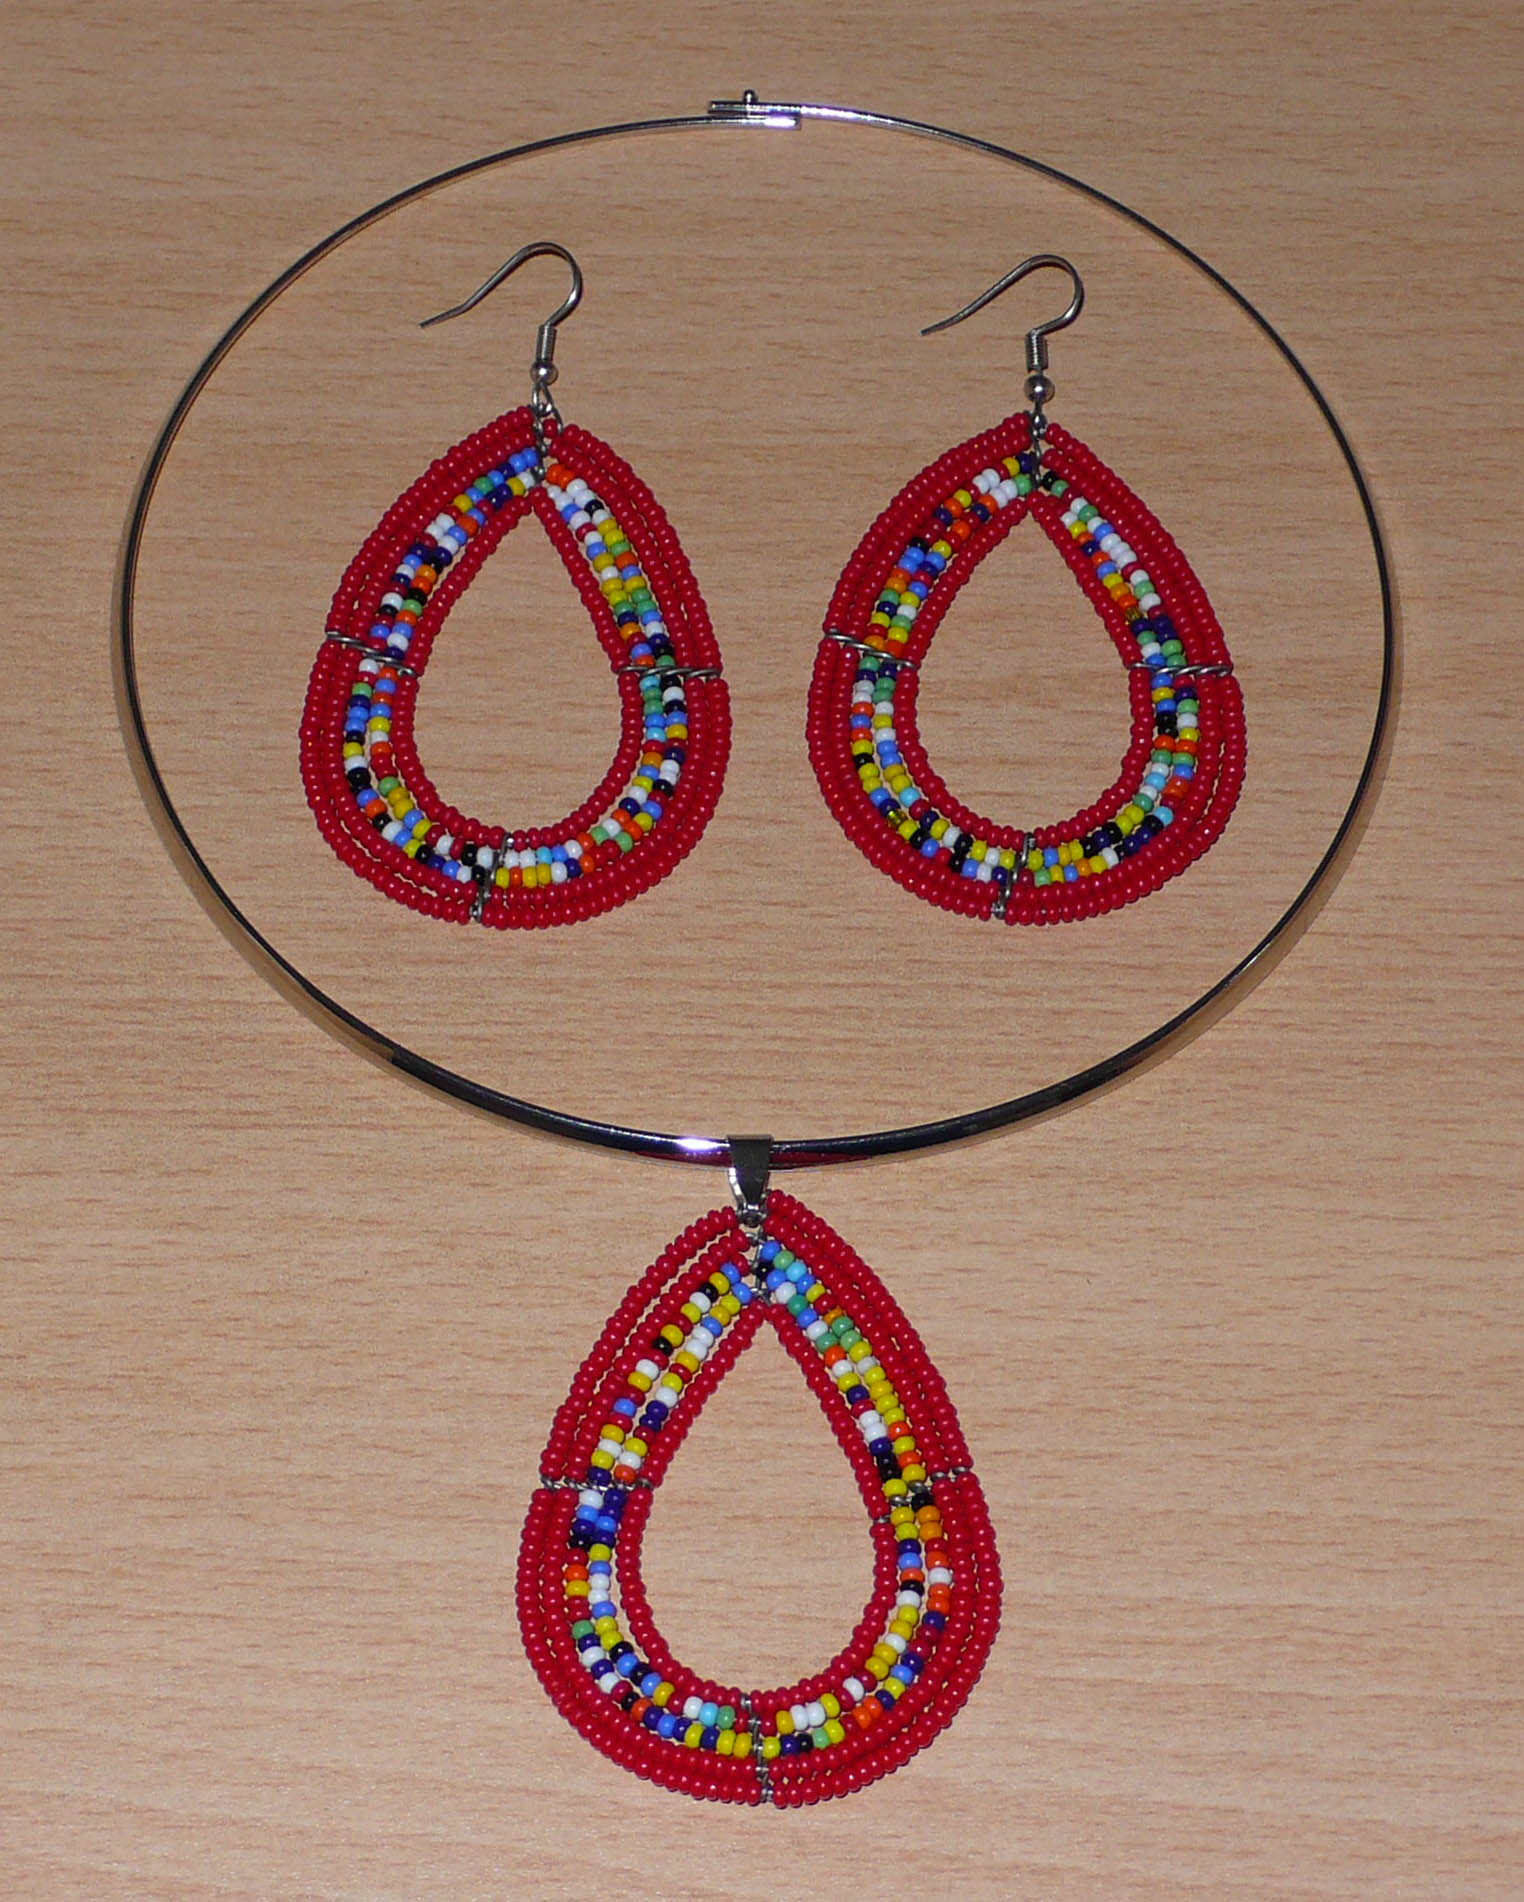 Parure contemporaine de bijoux Massai au style ethnique chic composée d'un collier ras-de-cou orné d'un pendentif en perles de verre rouges et multicolores en forme de goutte, et d'une paire de boucles d'oreilles assorties.